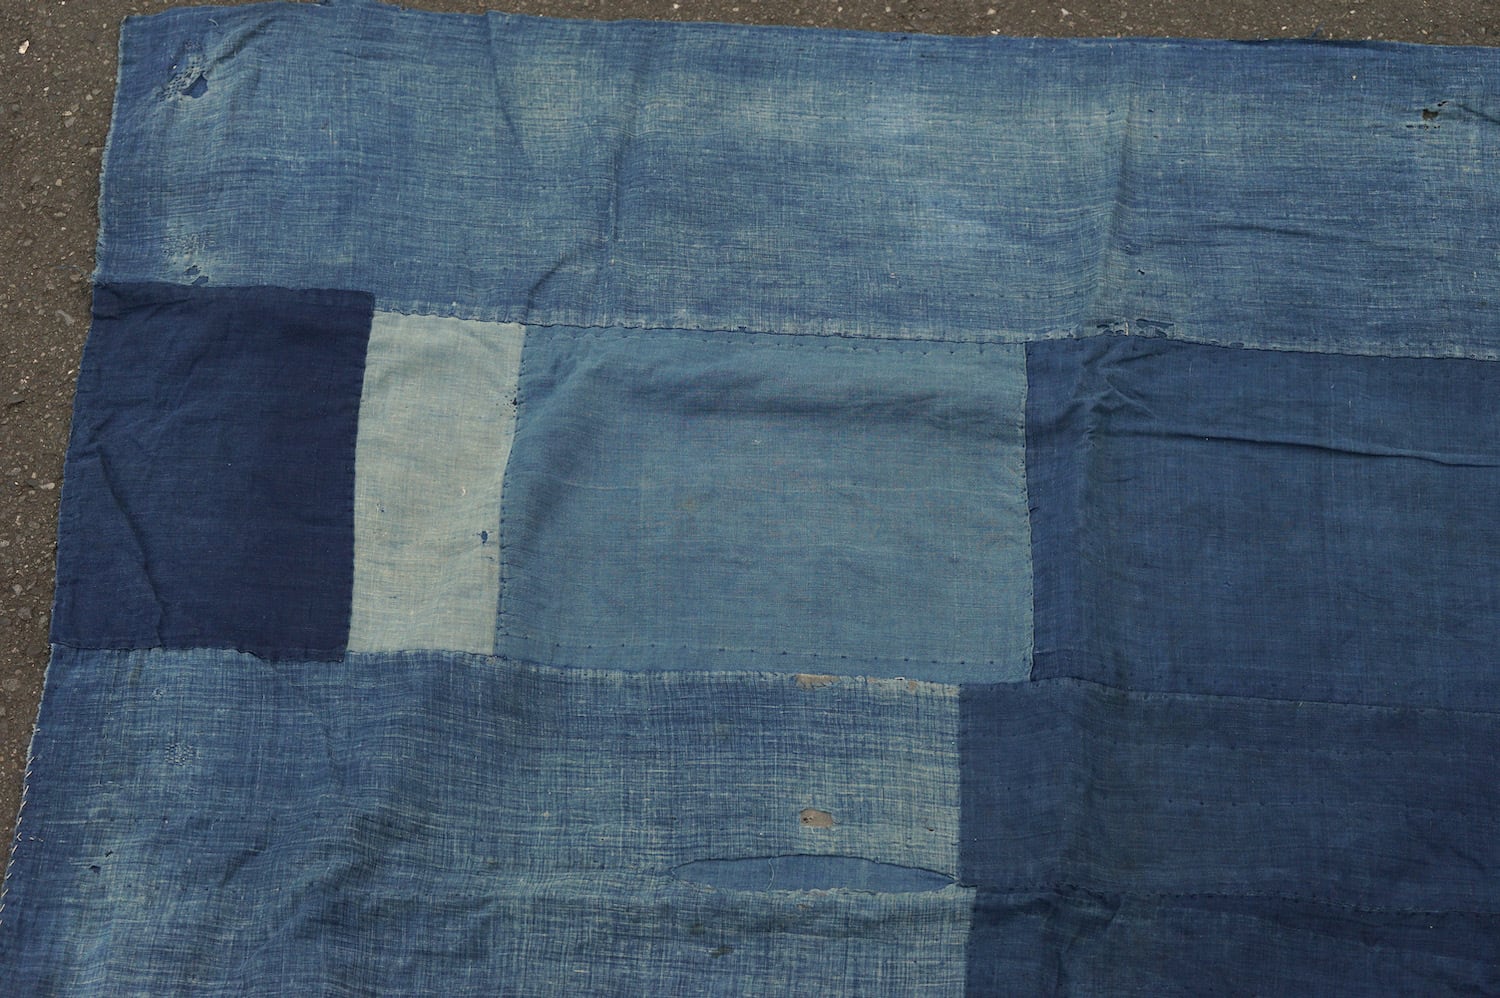 1600A9 ボロ 襤褸 5幅 藍無地 藍染 木綿 時代古布 継ぎ当て 継ぎ接ぎ 